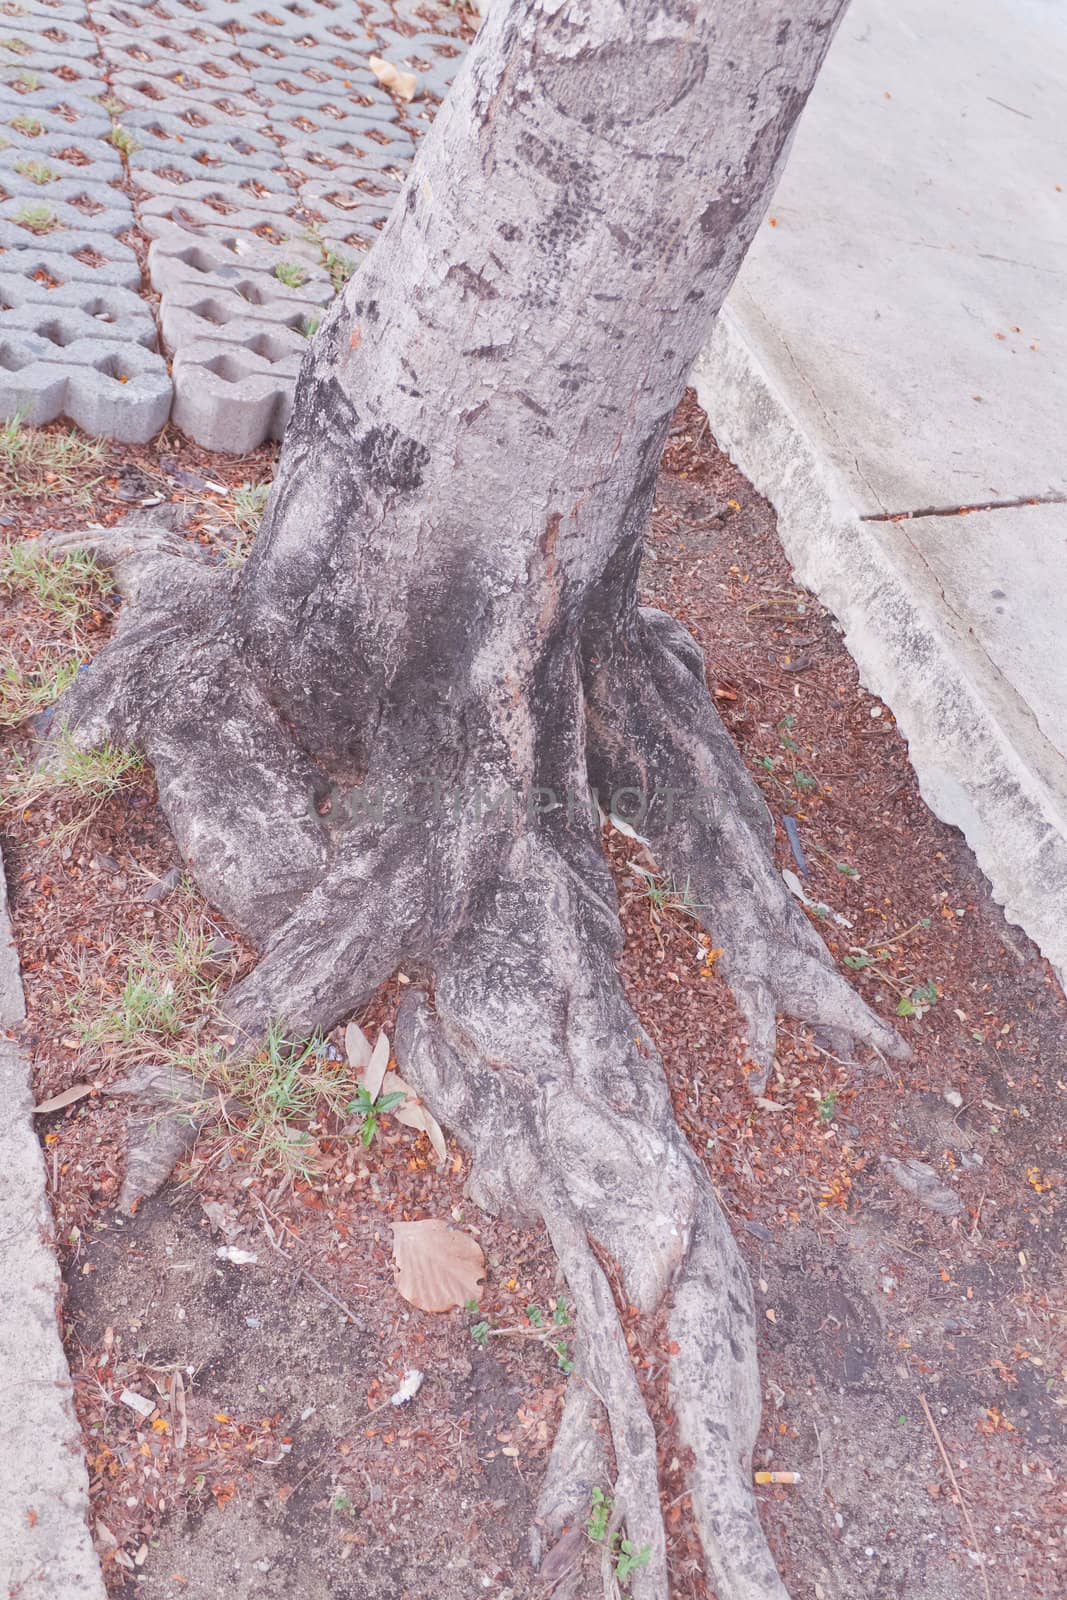 Tree bark, dry parts of the tree.